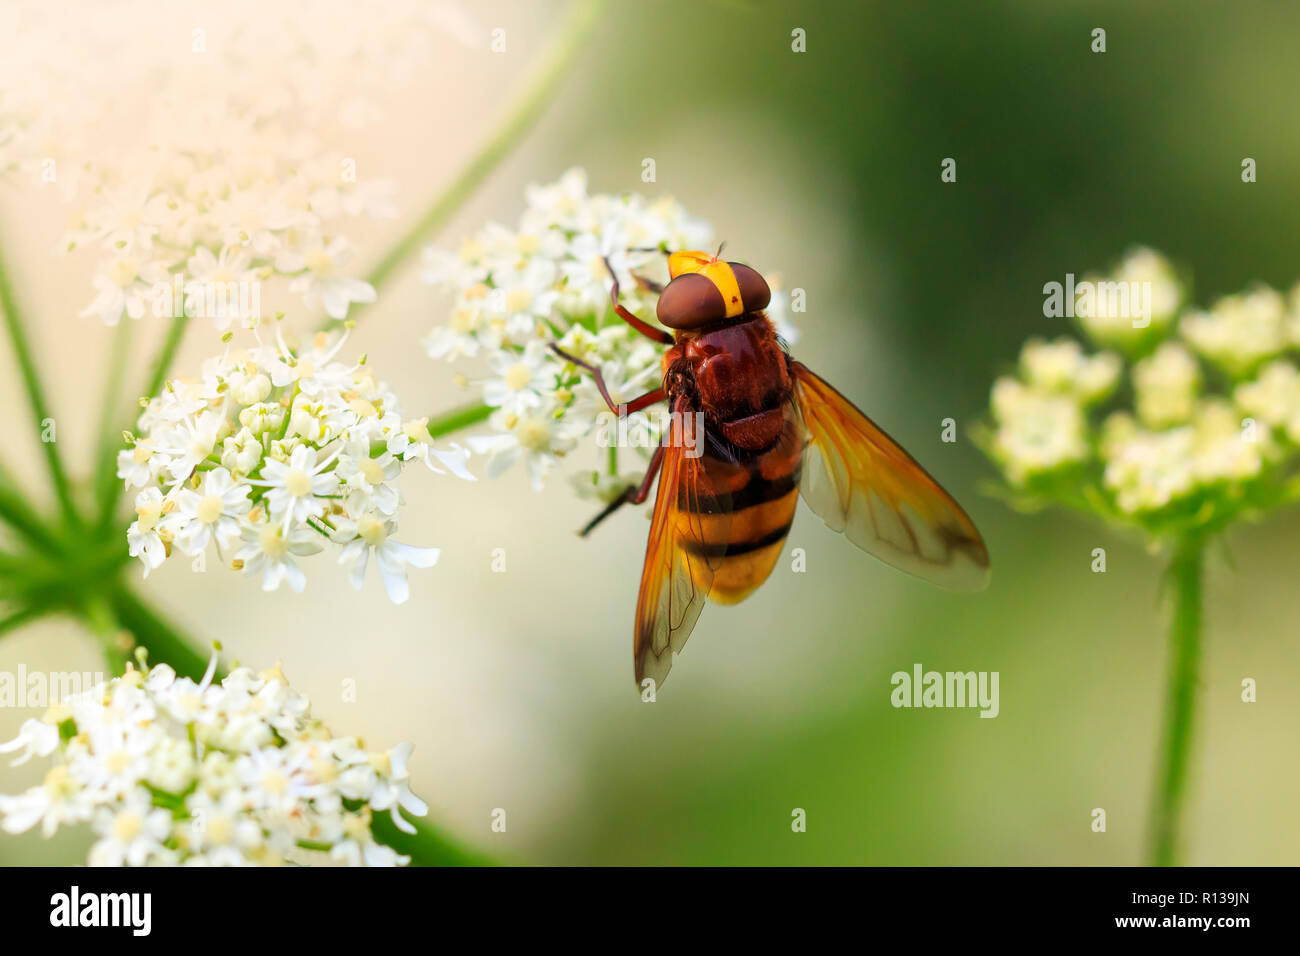 Volucella zonaria, il Hornet mimare hoverfly, alimentando il nettare dai fiori bianchi Foto Stock